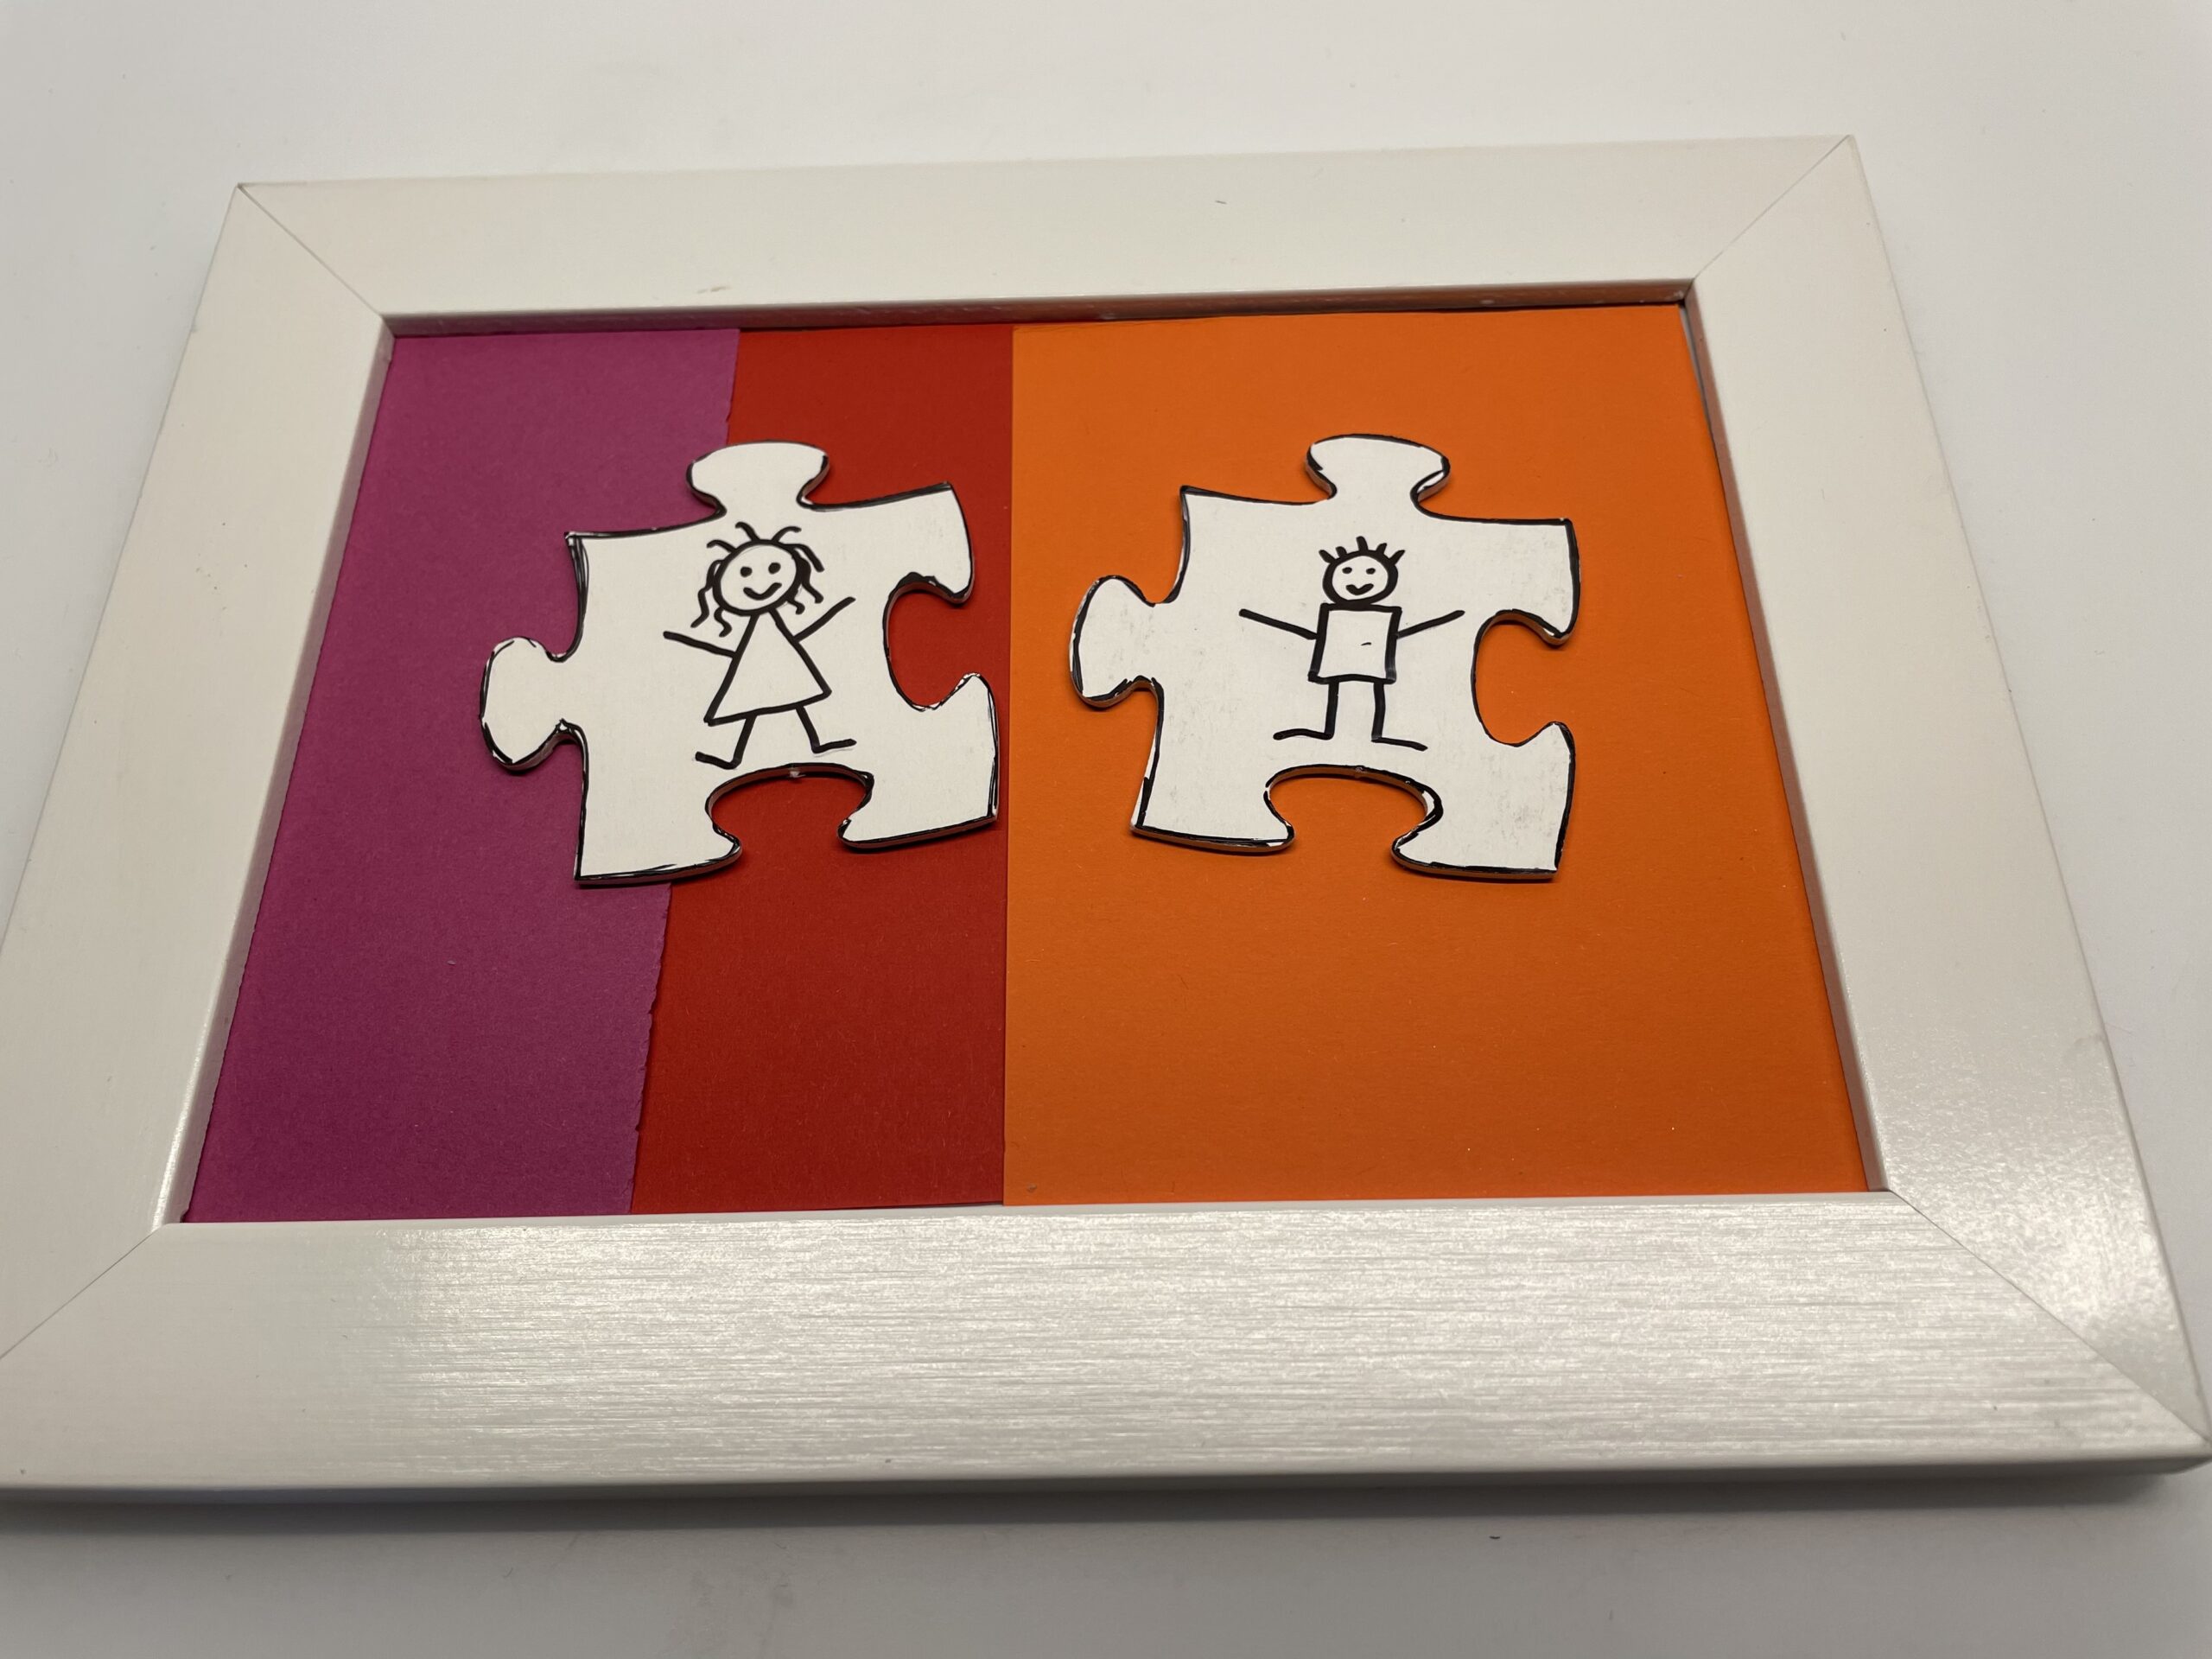 Bild zum Schritt 10 für das Bastel- und DIY-Abenteuer für Kinder: 'Jetzt legt ihr die Puzzleteile auf den Rahmen.'